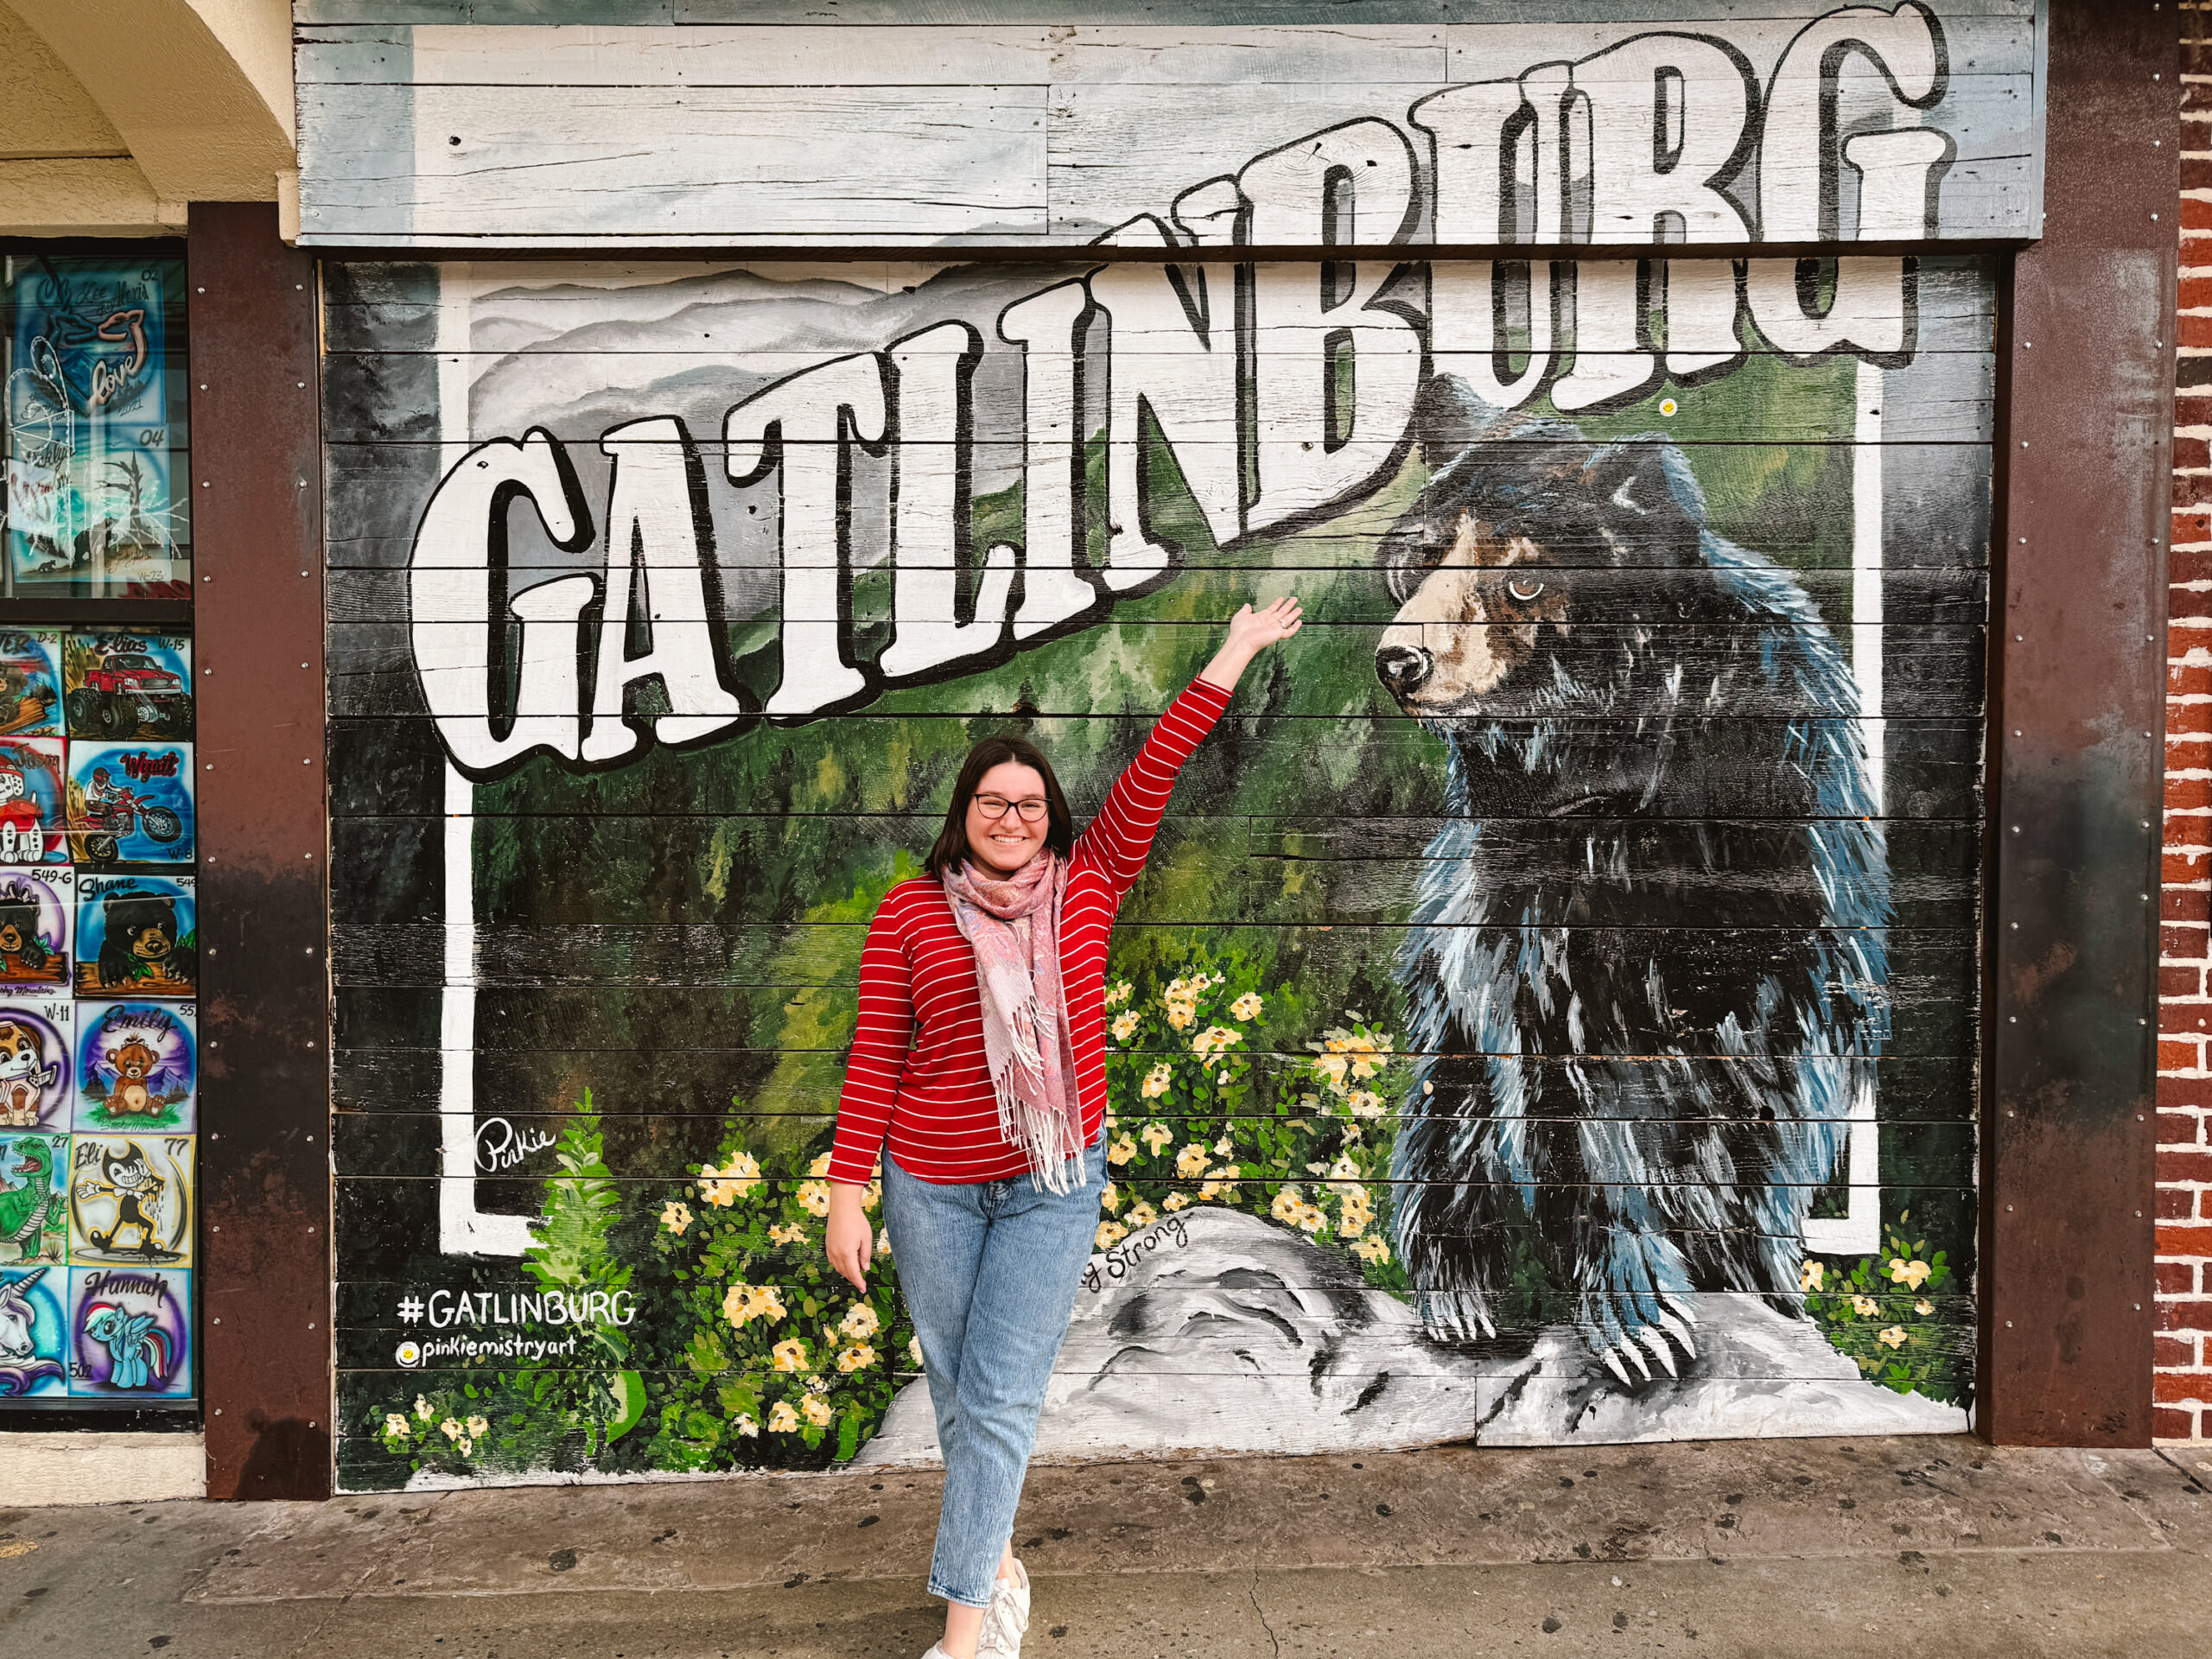 Woman posing in front of Gatlinburg mural